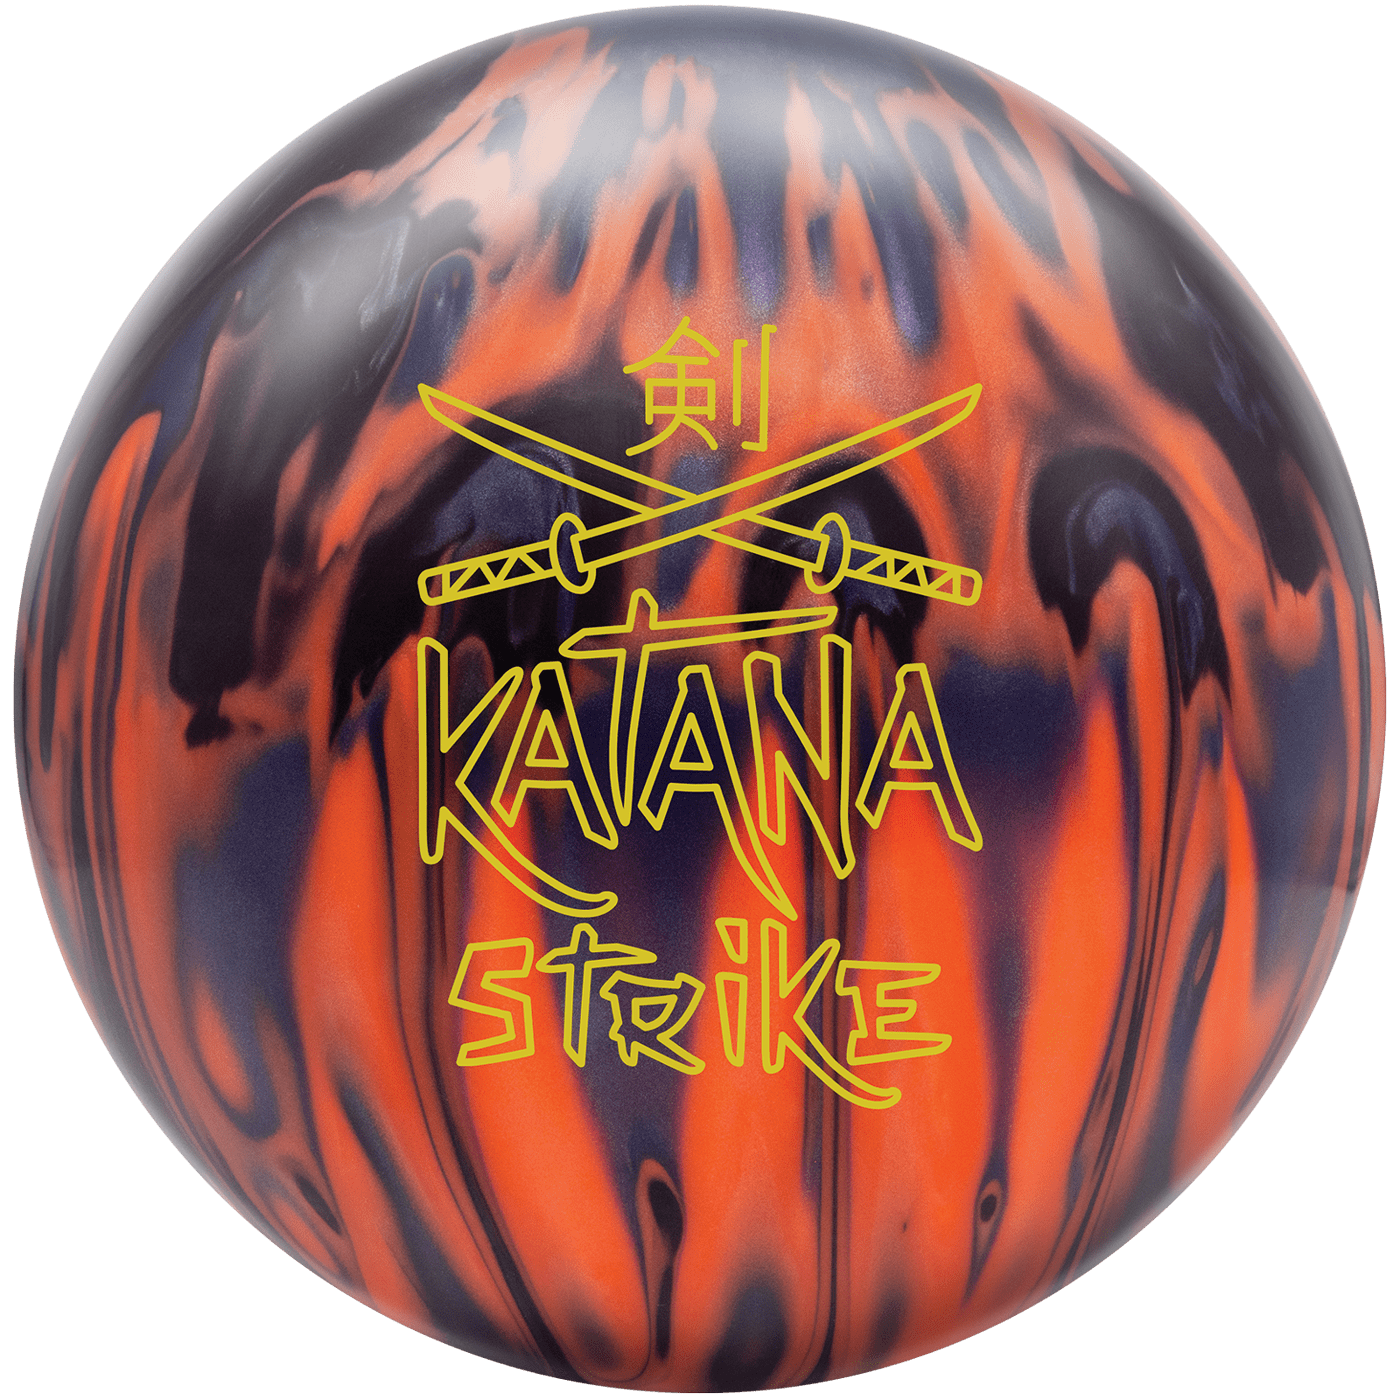 Radical Katana Strike - Tom Carter's Pro Shop